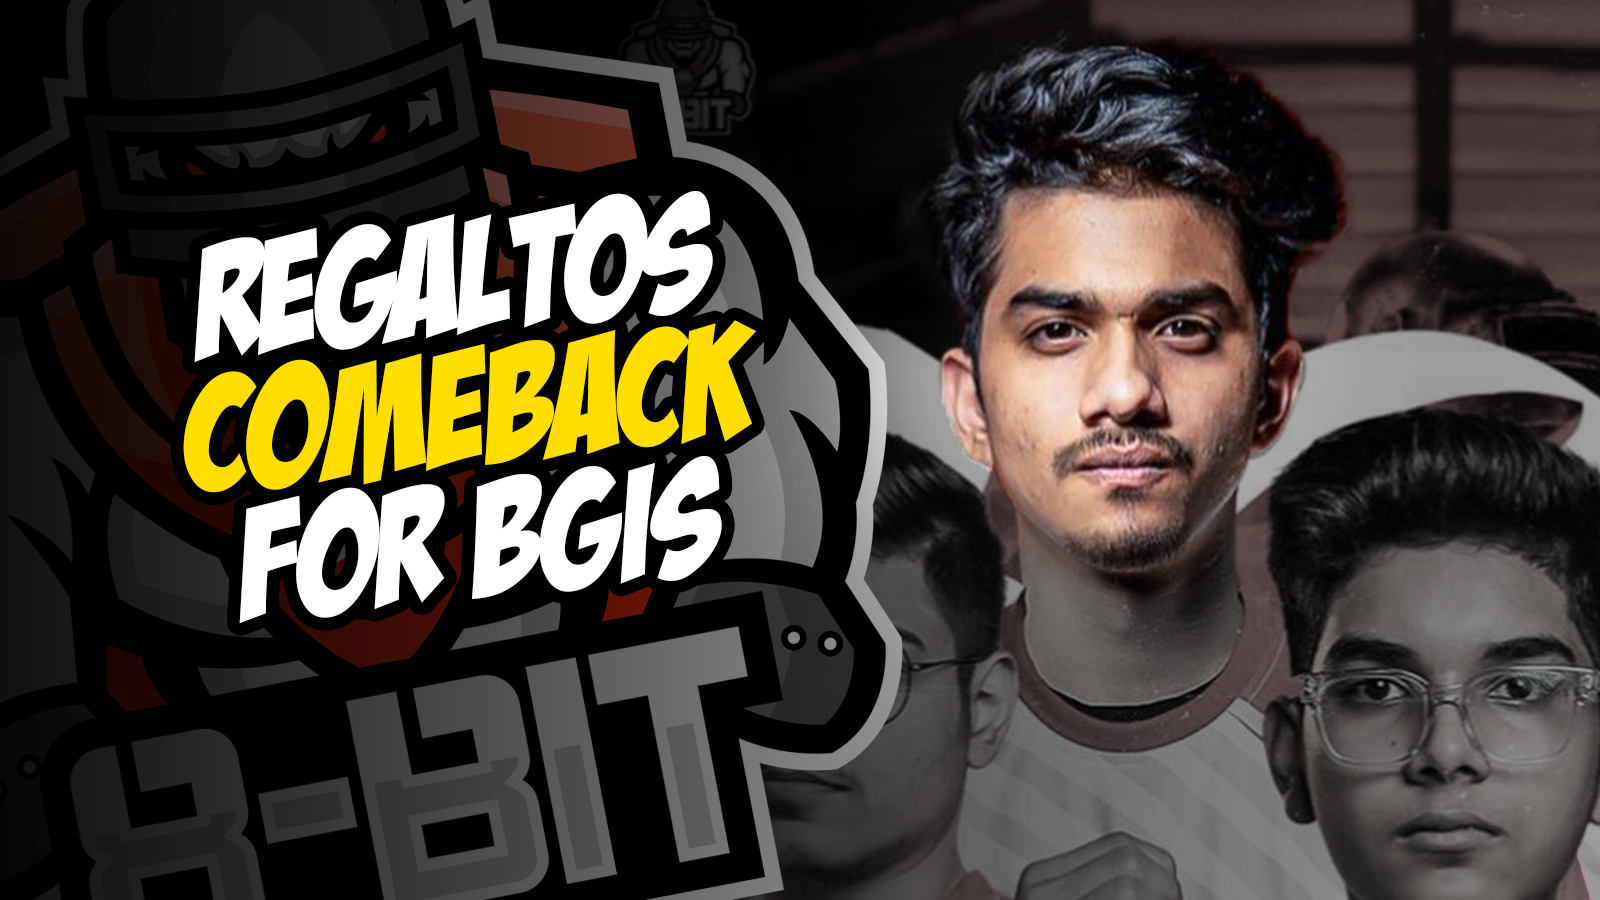 Regaltos Makes Sensational Comeback with Team 8Bit for BGIS